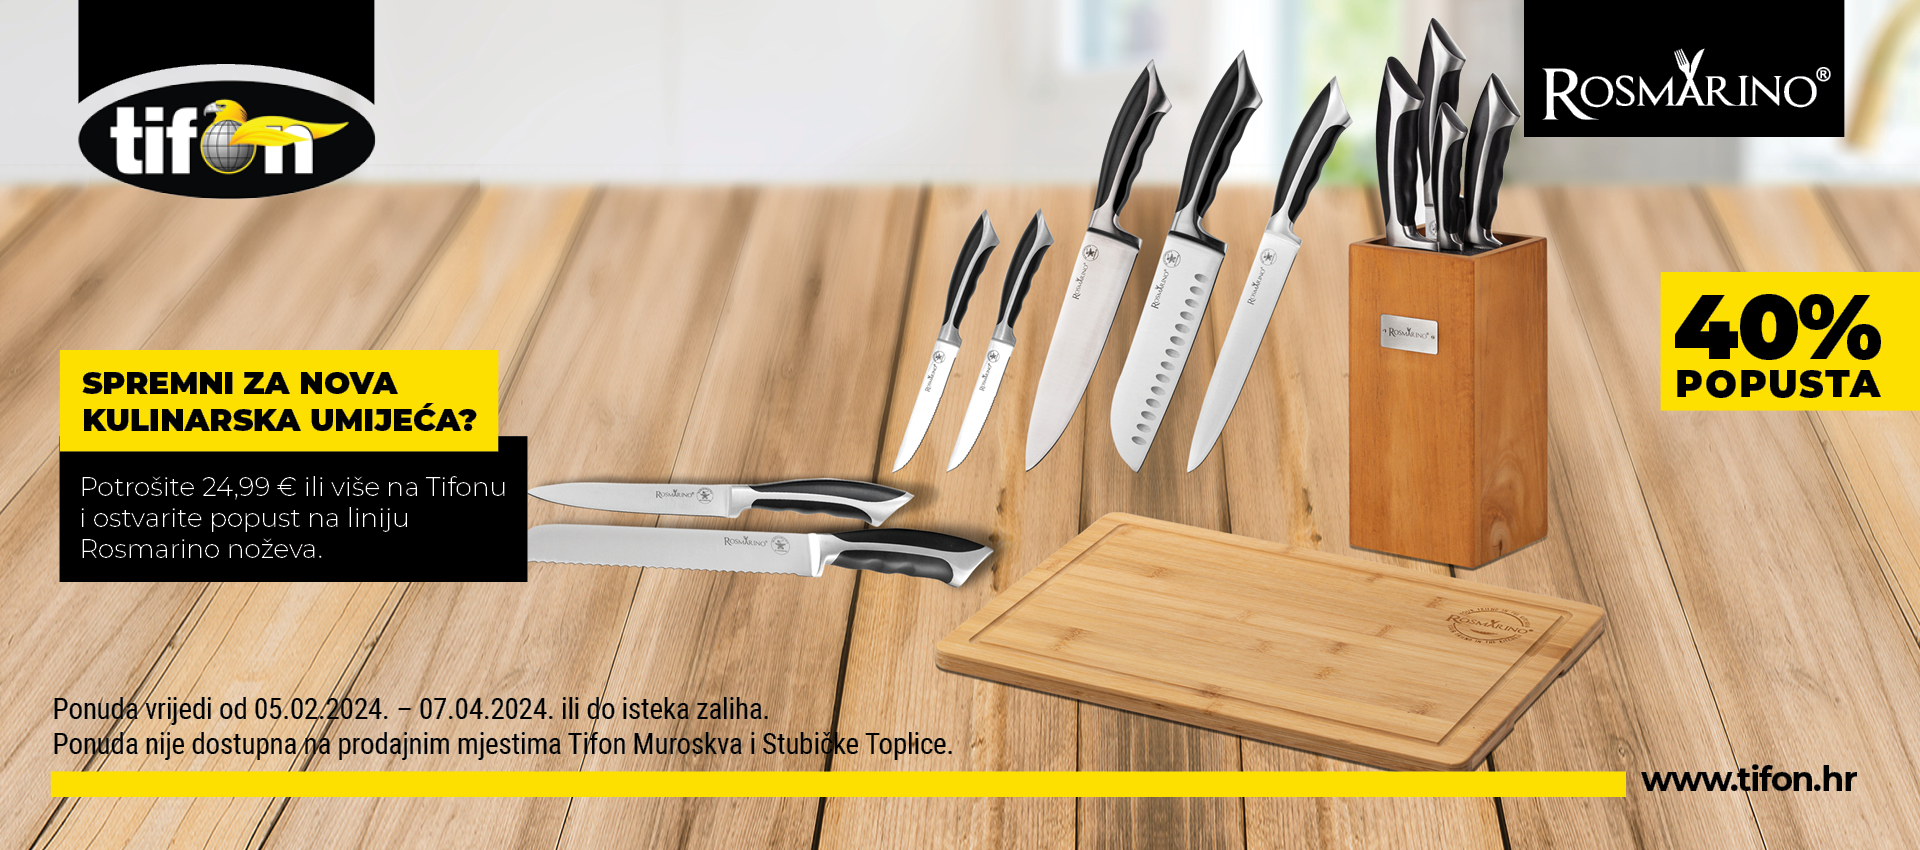 Rosmarino noževi - Spremite se za nova kulinarska umijeća!